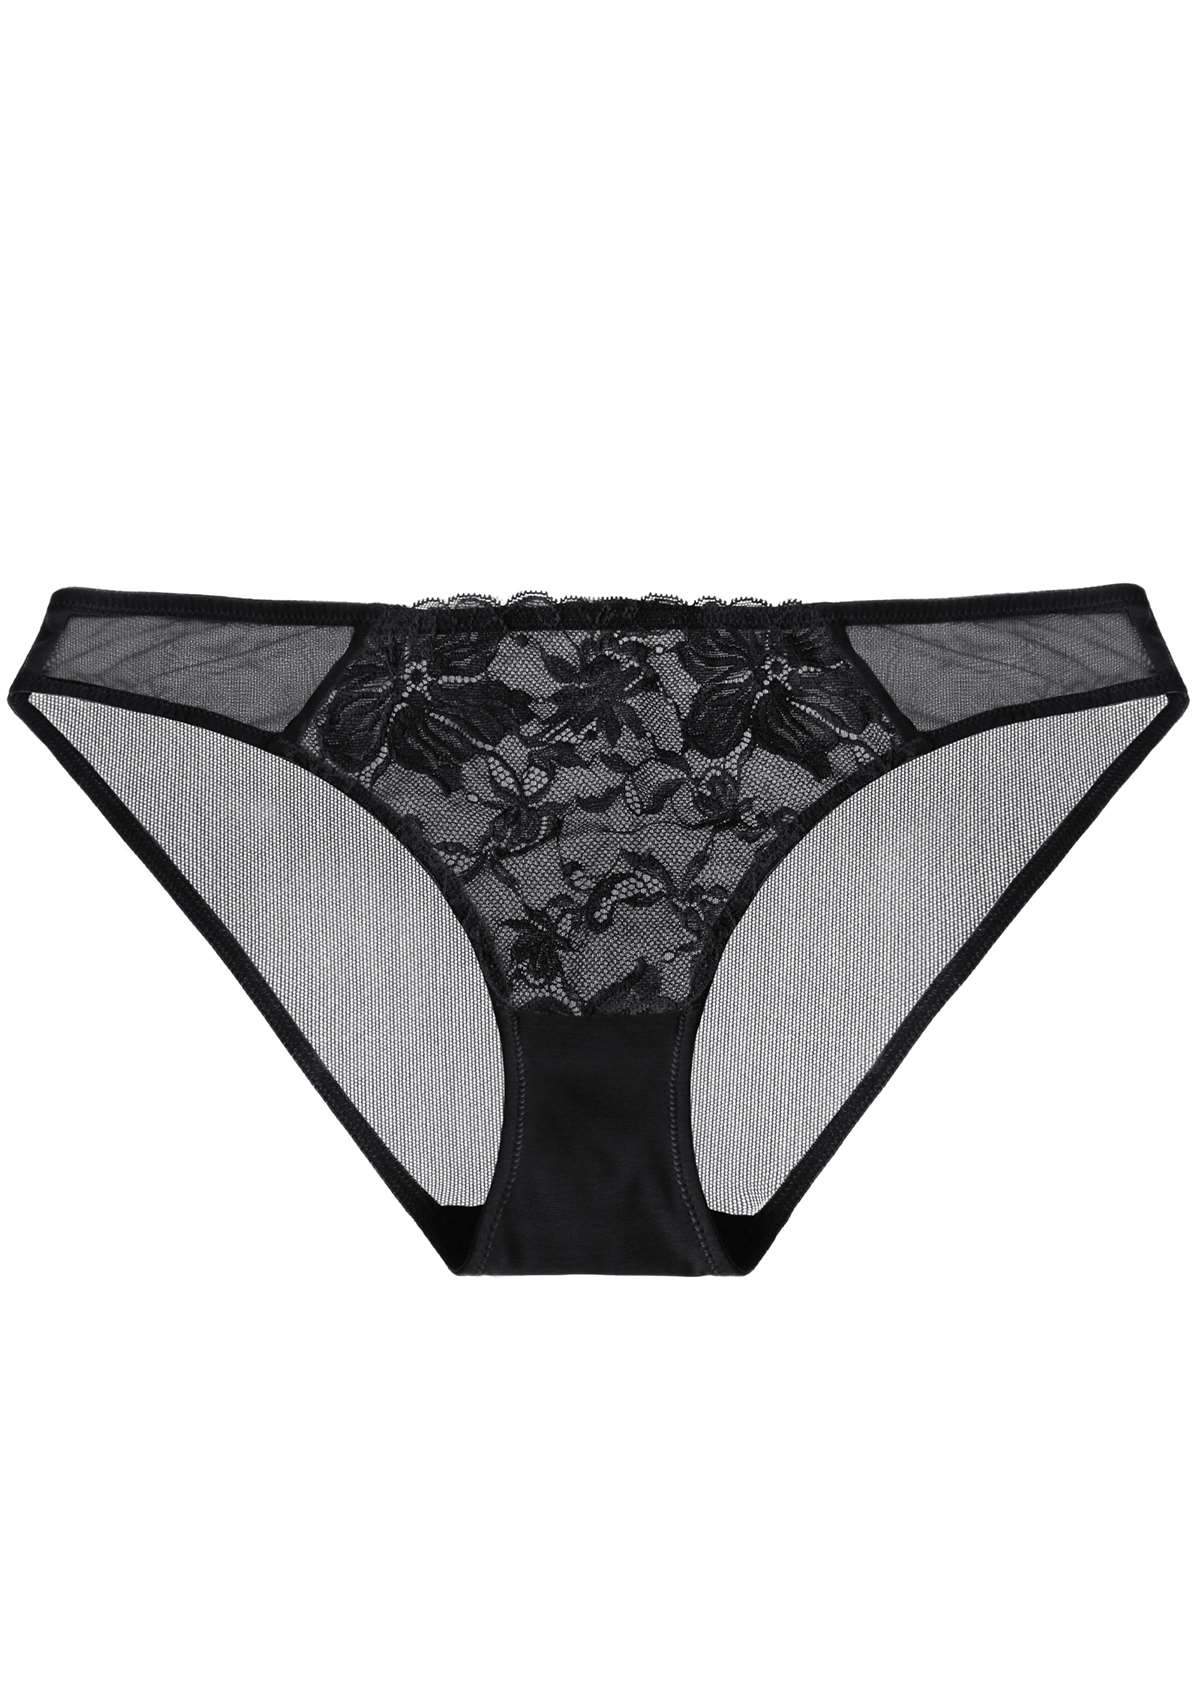 HSIA Breathable Sexy Feminine Lace Mesh Bikini Underwear - XXL / Light Coral